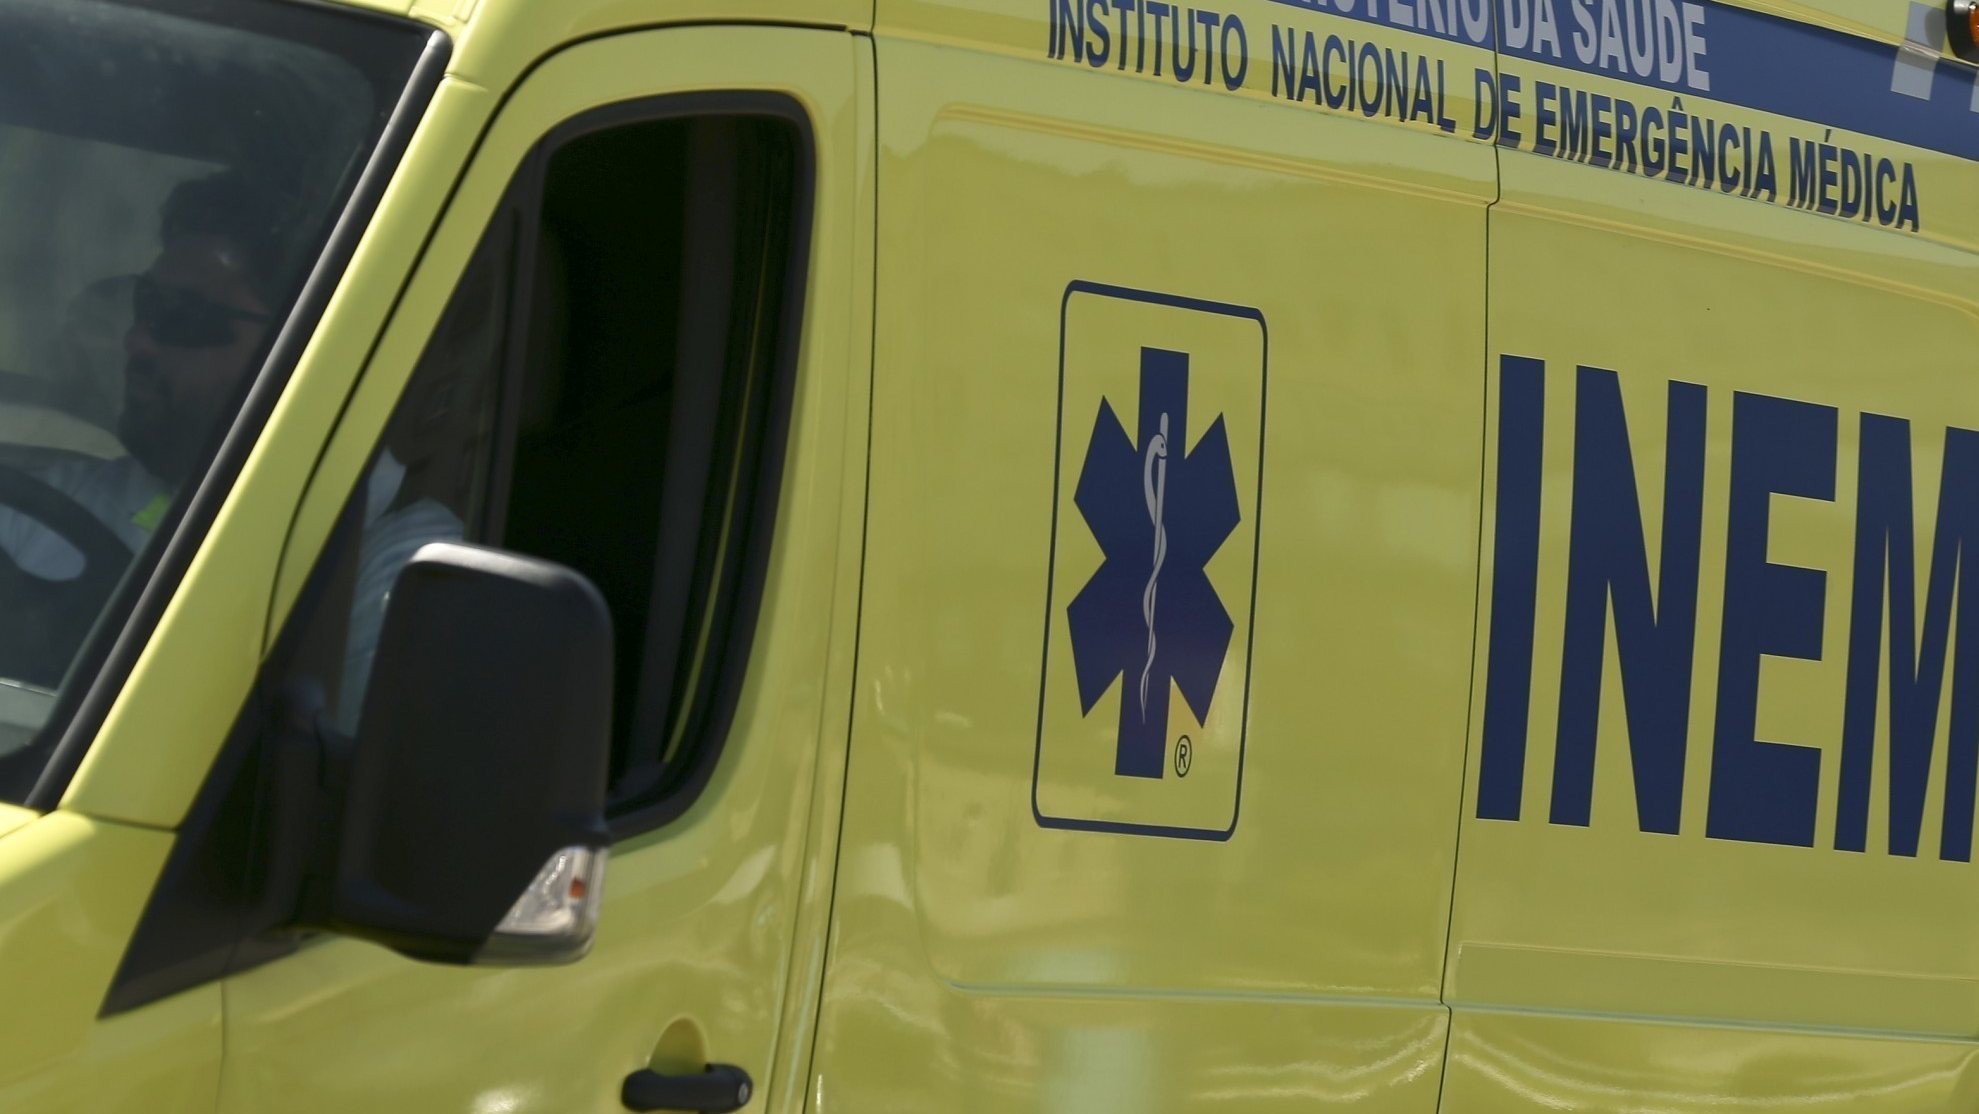 De acordo com a LBP, cerca de 90% de todo o serviço de emergência pré-hospitalar em Portugal é feito pelos bombeiros